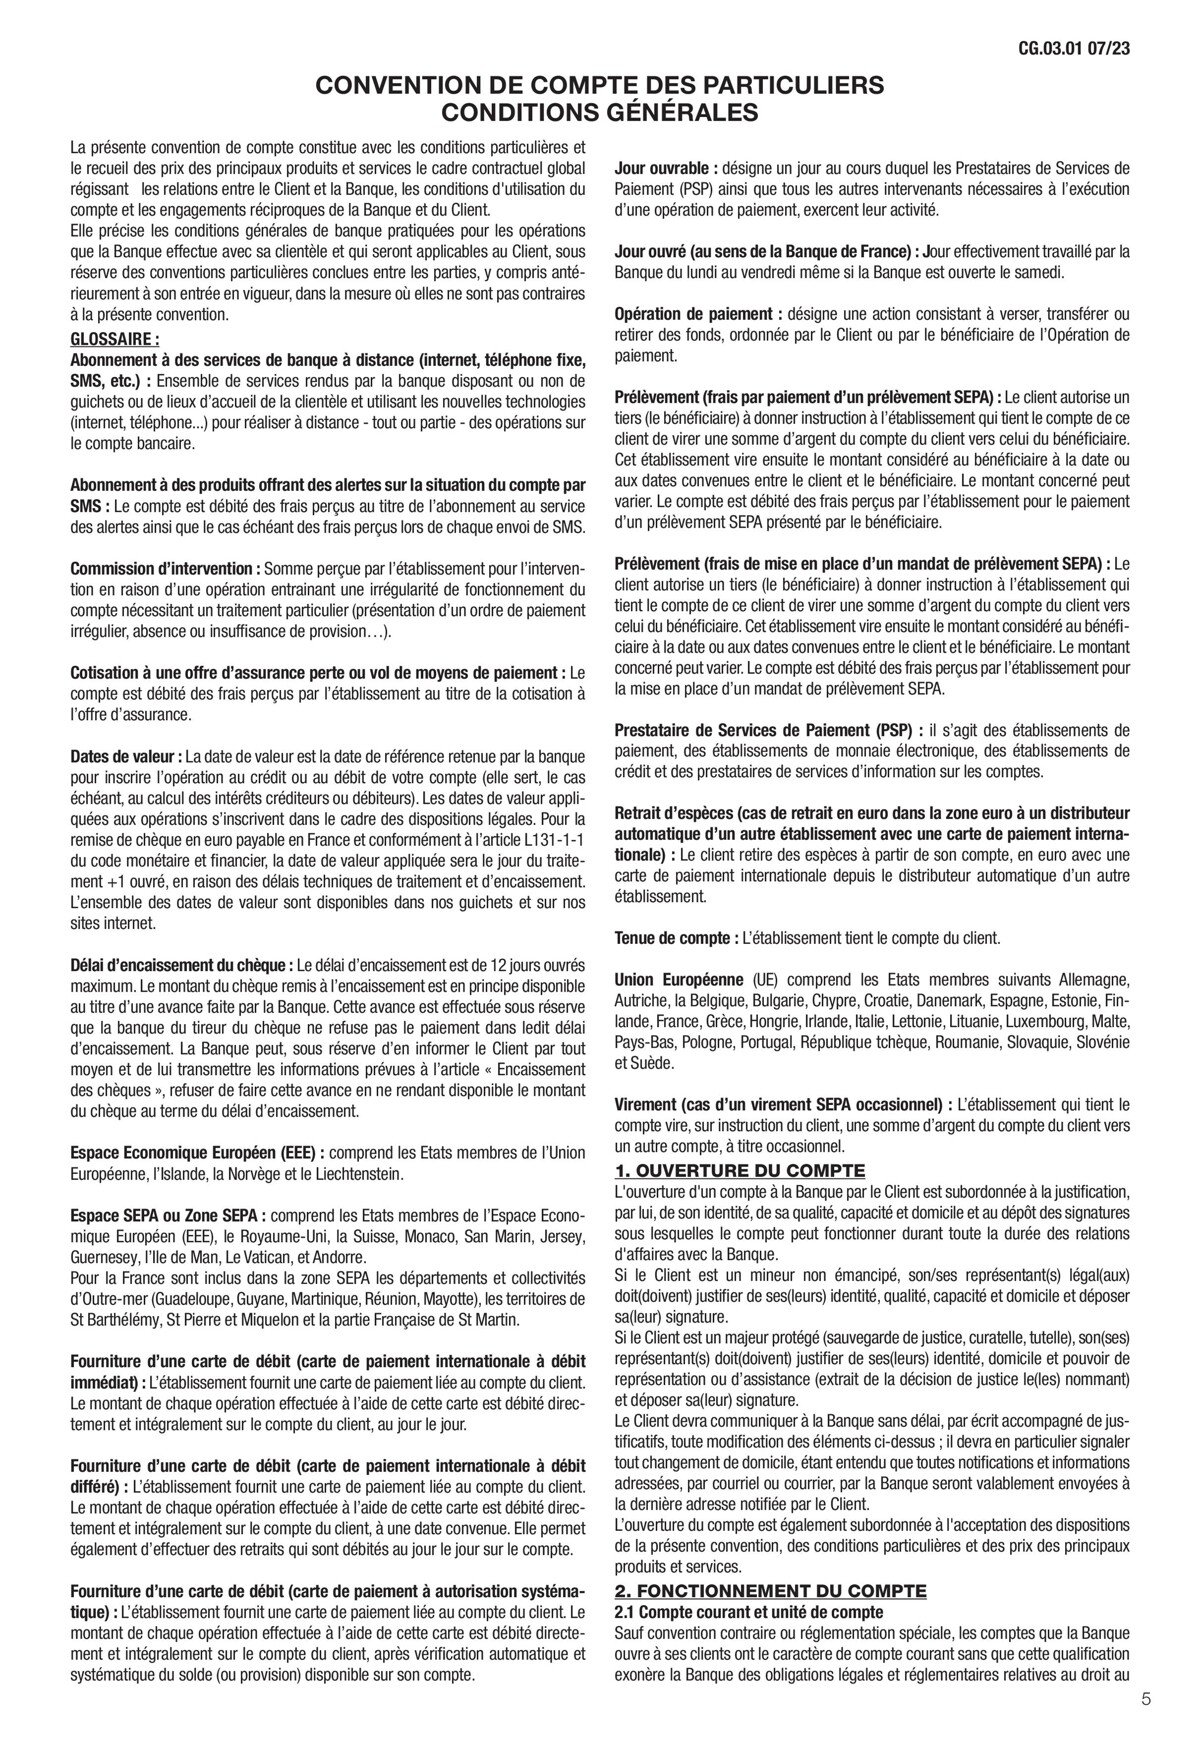 Catalogue Conditions générales Particuliers, page 00007